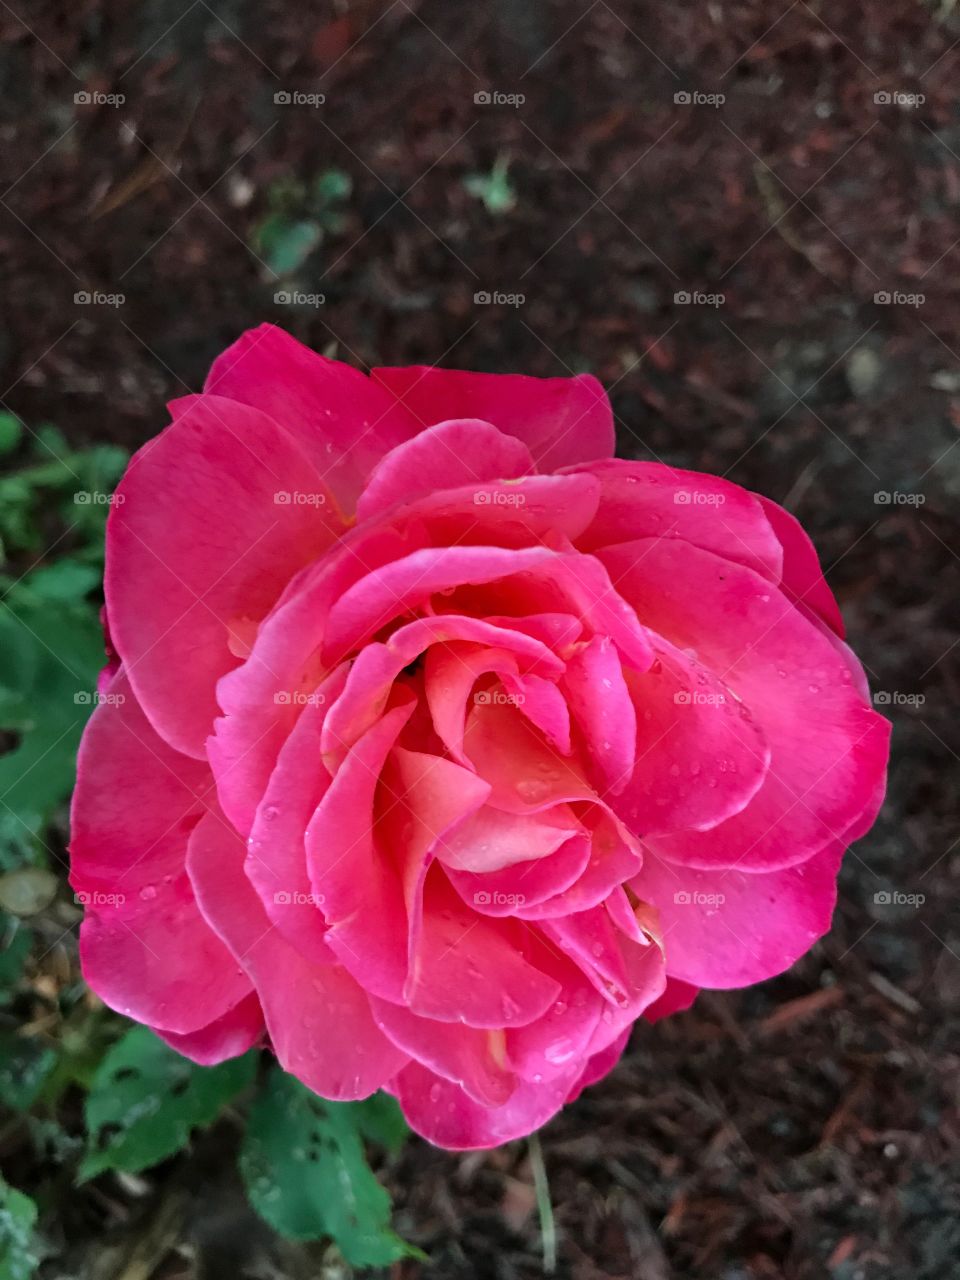 Beautiful pink rose in full bloom